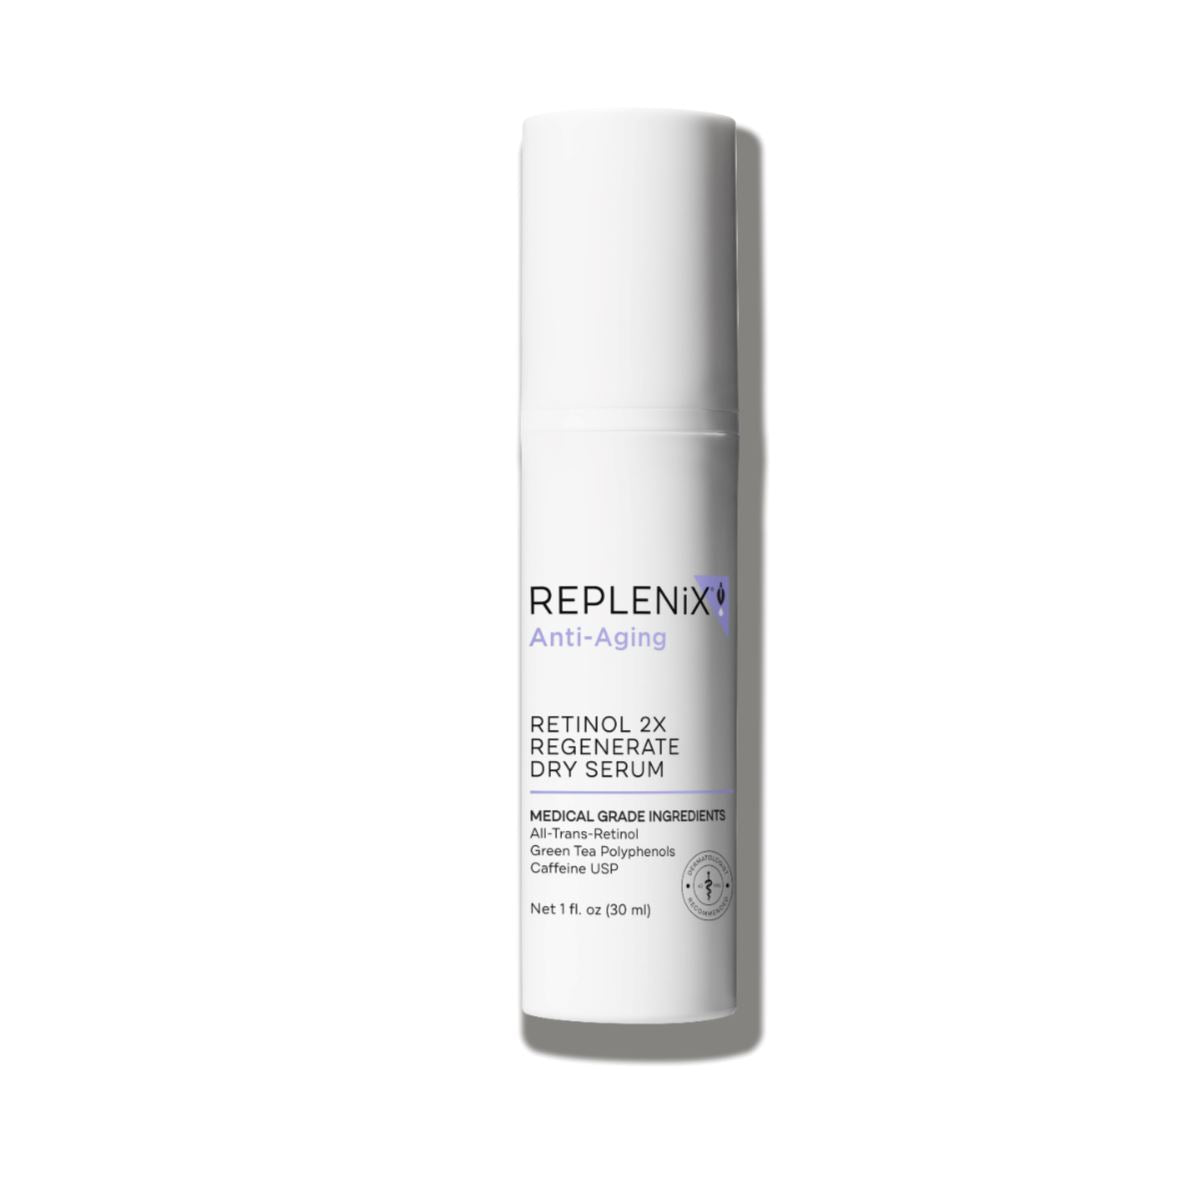 Replenix Retinol 2X Regenerate Dry Serum Replenix 1 fl. oz. Shop at Exclusive Beauty Club